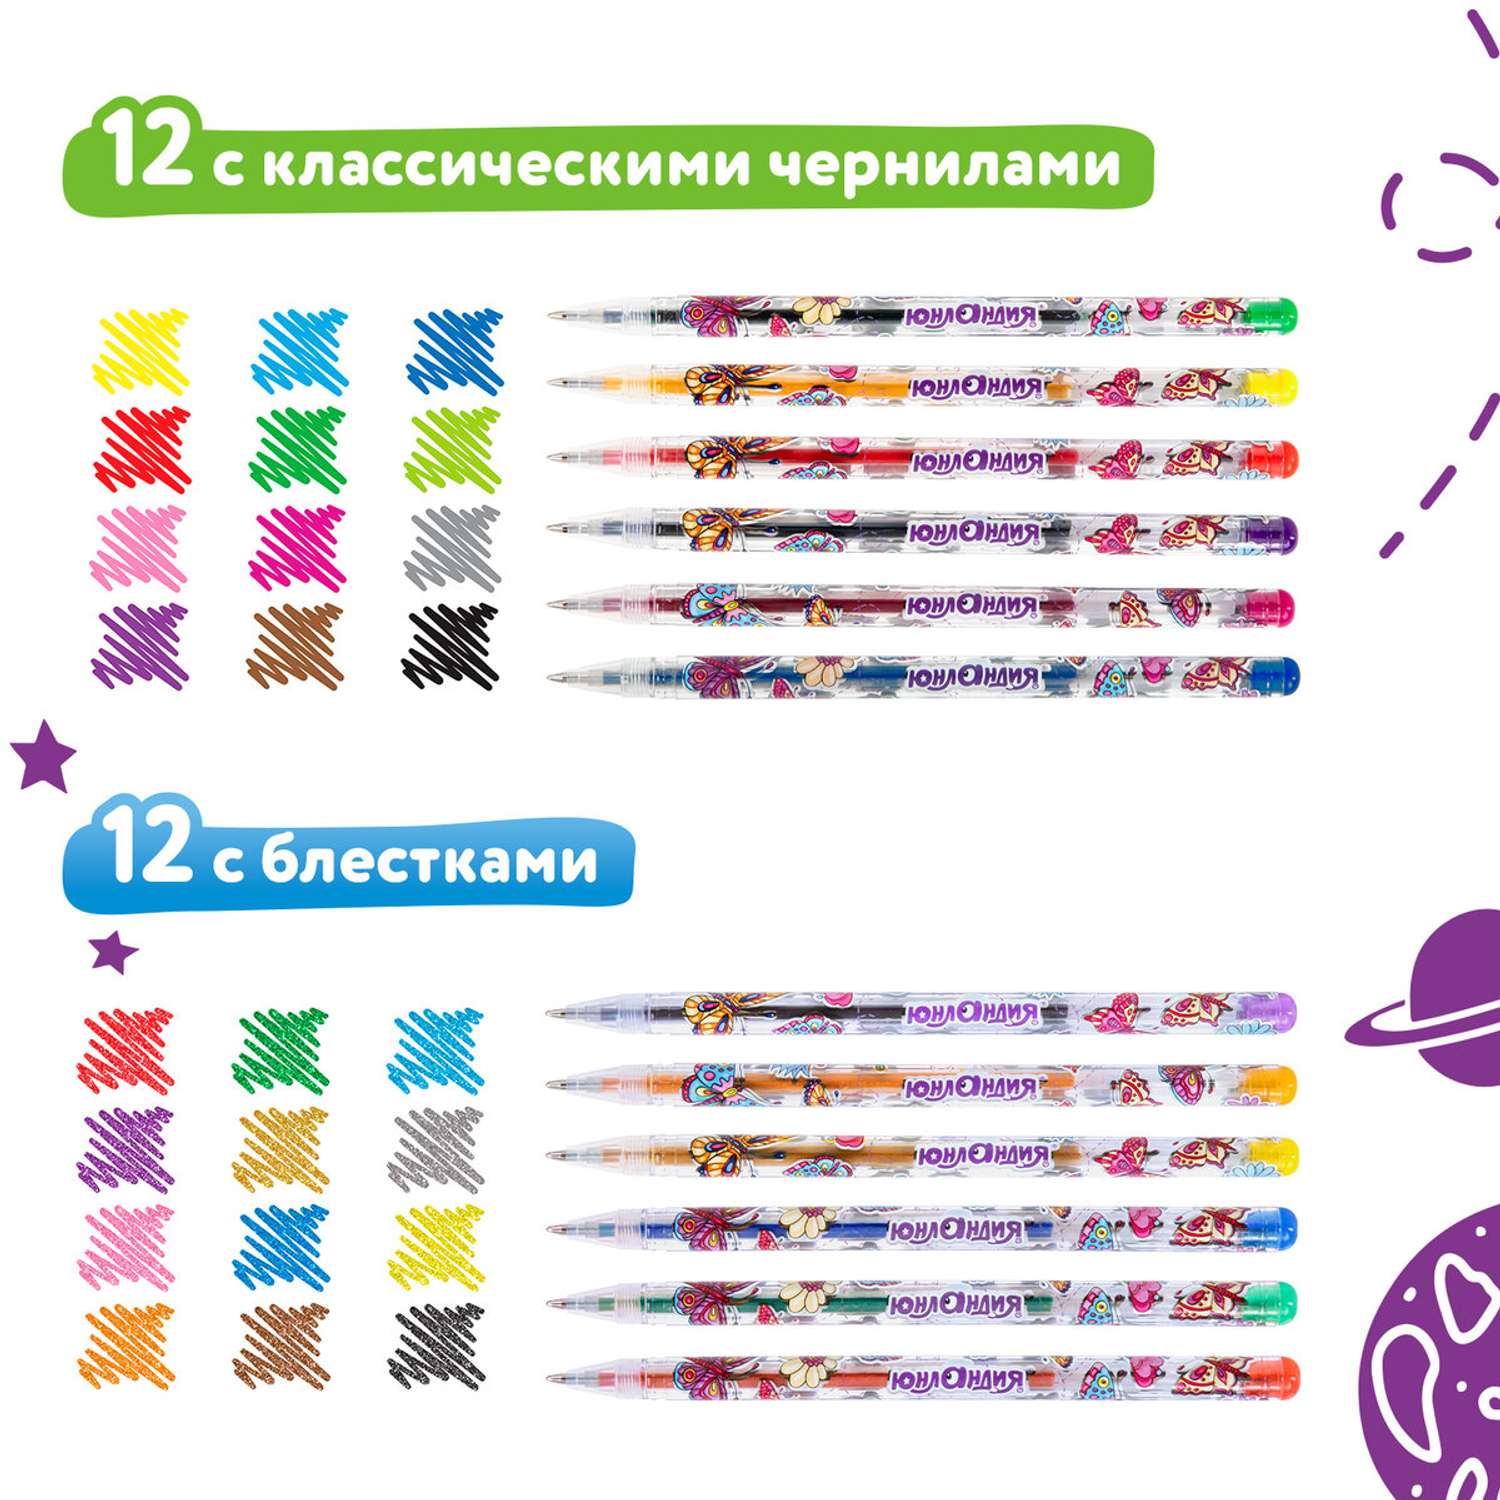 Ручки гелевые Юнландия цветные набор 24 Цвета - фото 4